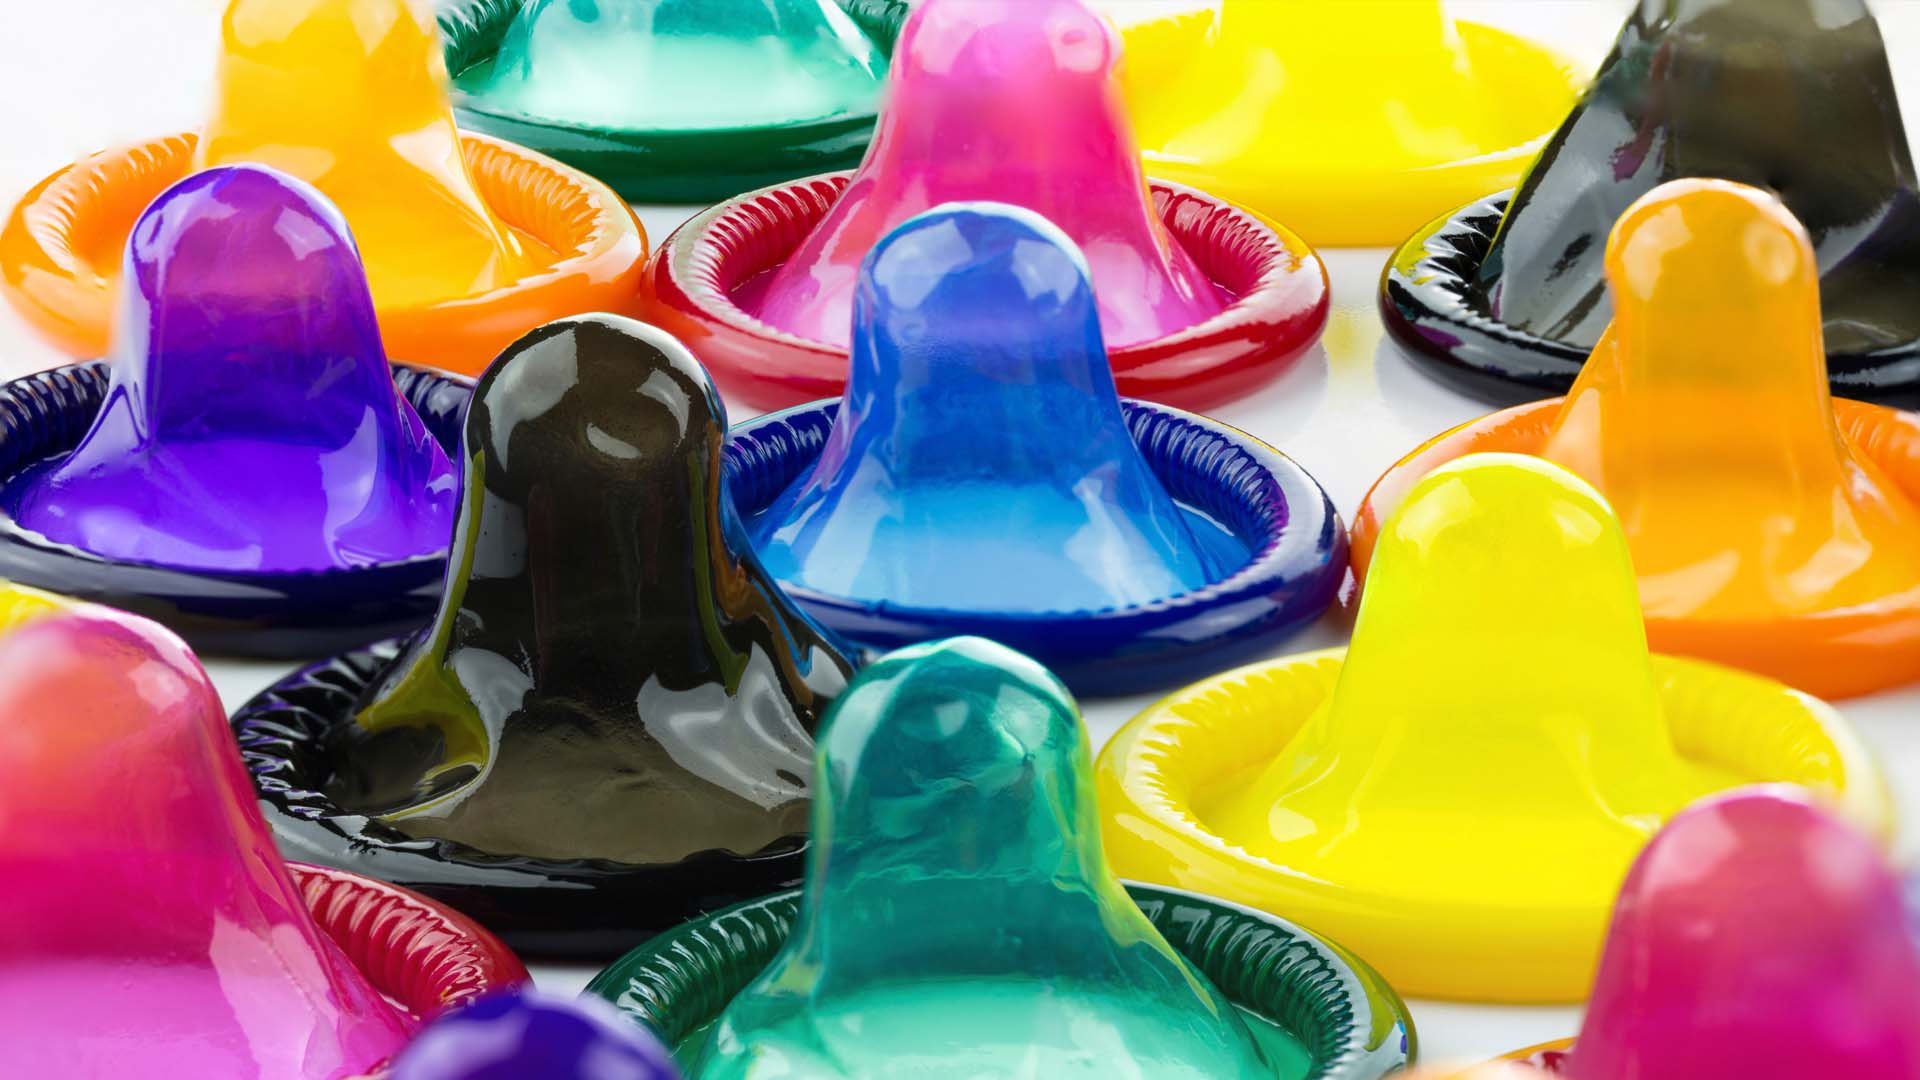 Comité organizador aseguró que repartirá el triple de los preservativos ofrecidos en la pasada edición Londres 2012